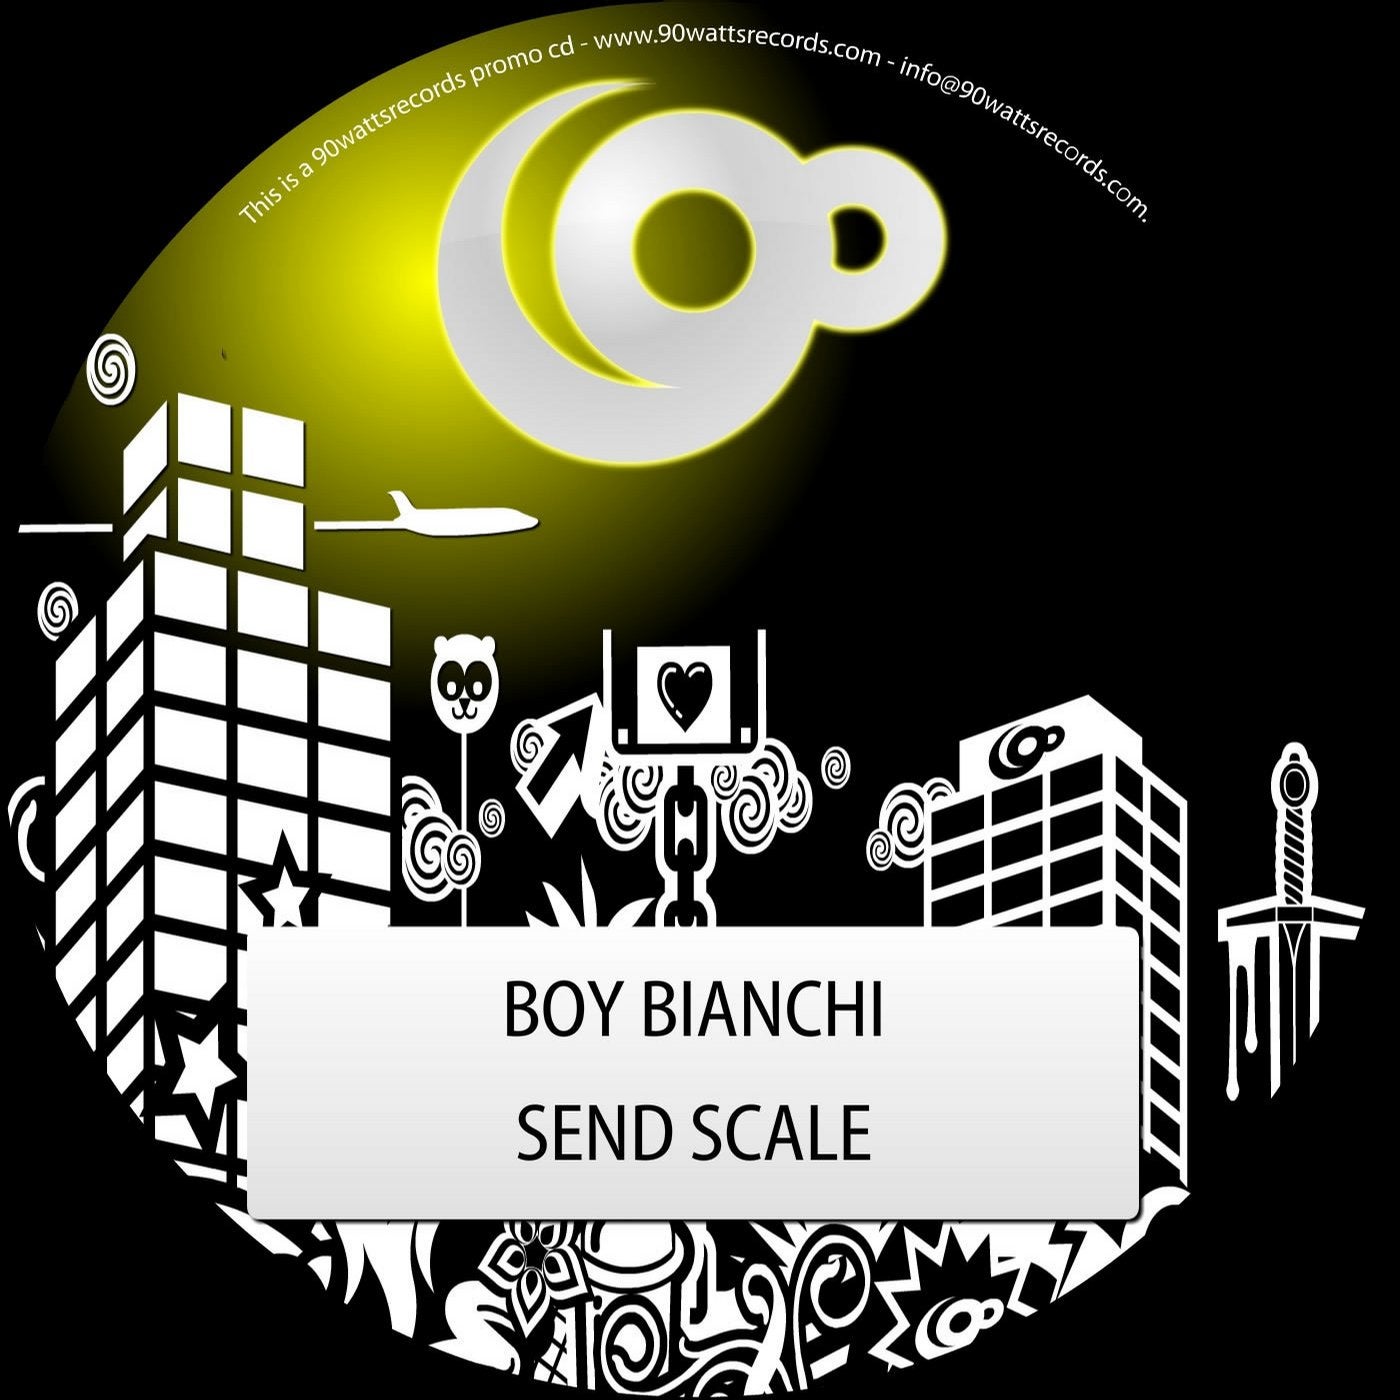 Send Scale